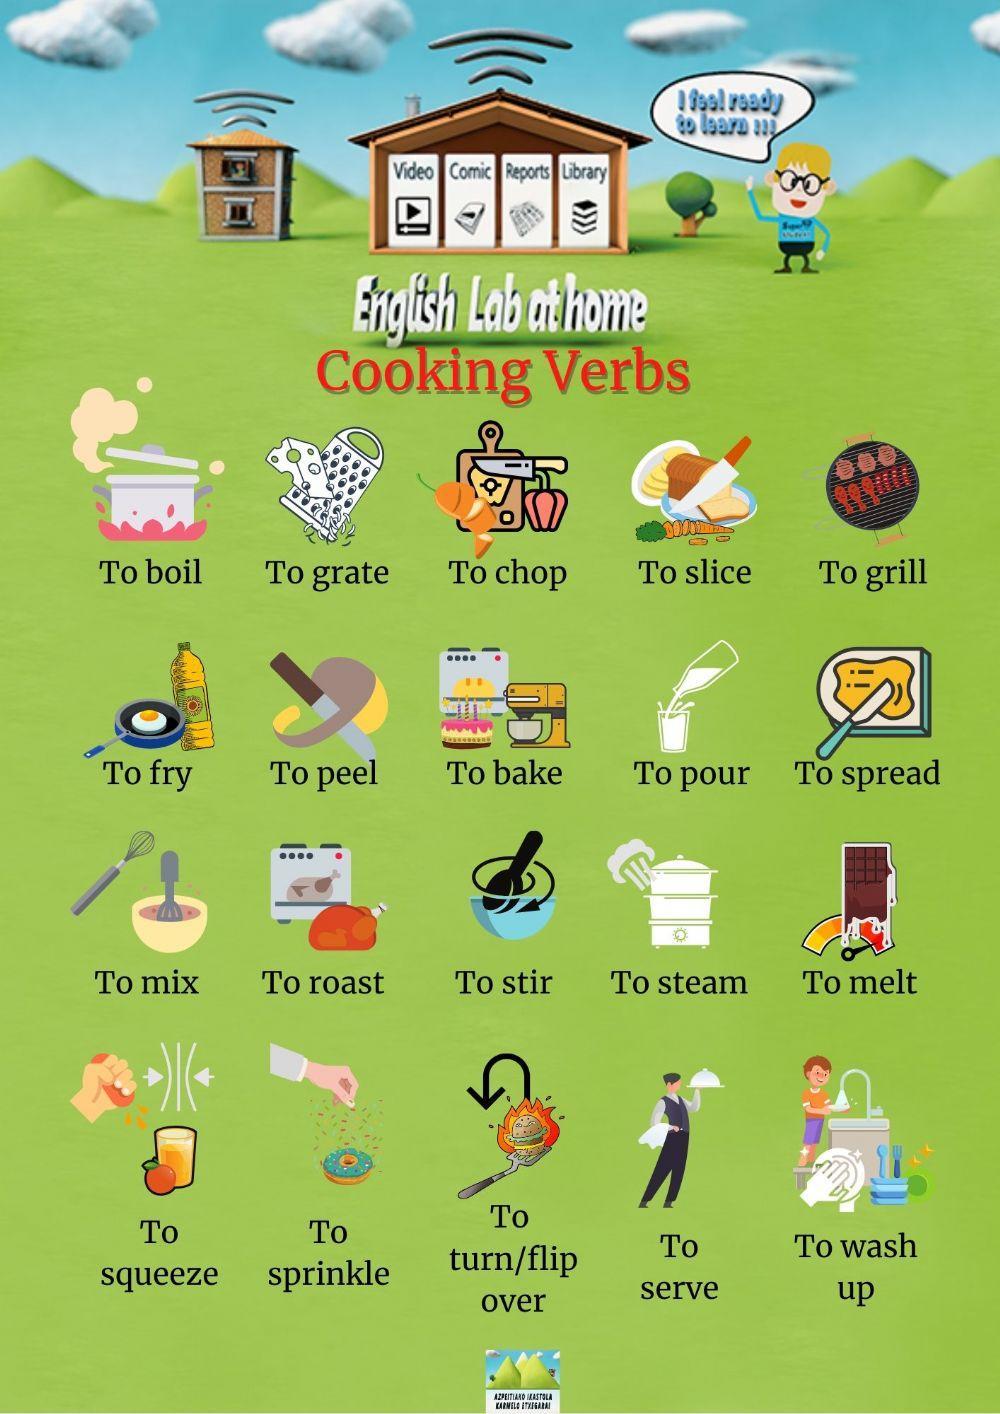 Cooking verbs week 9 review